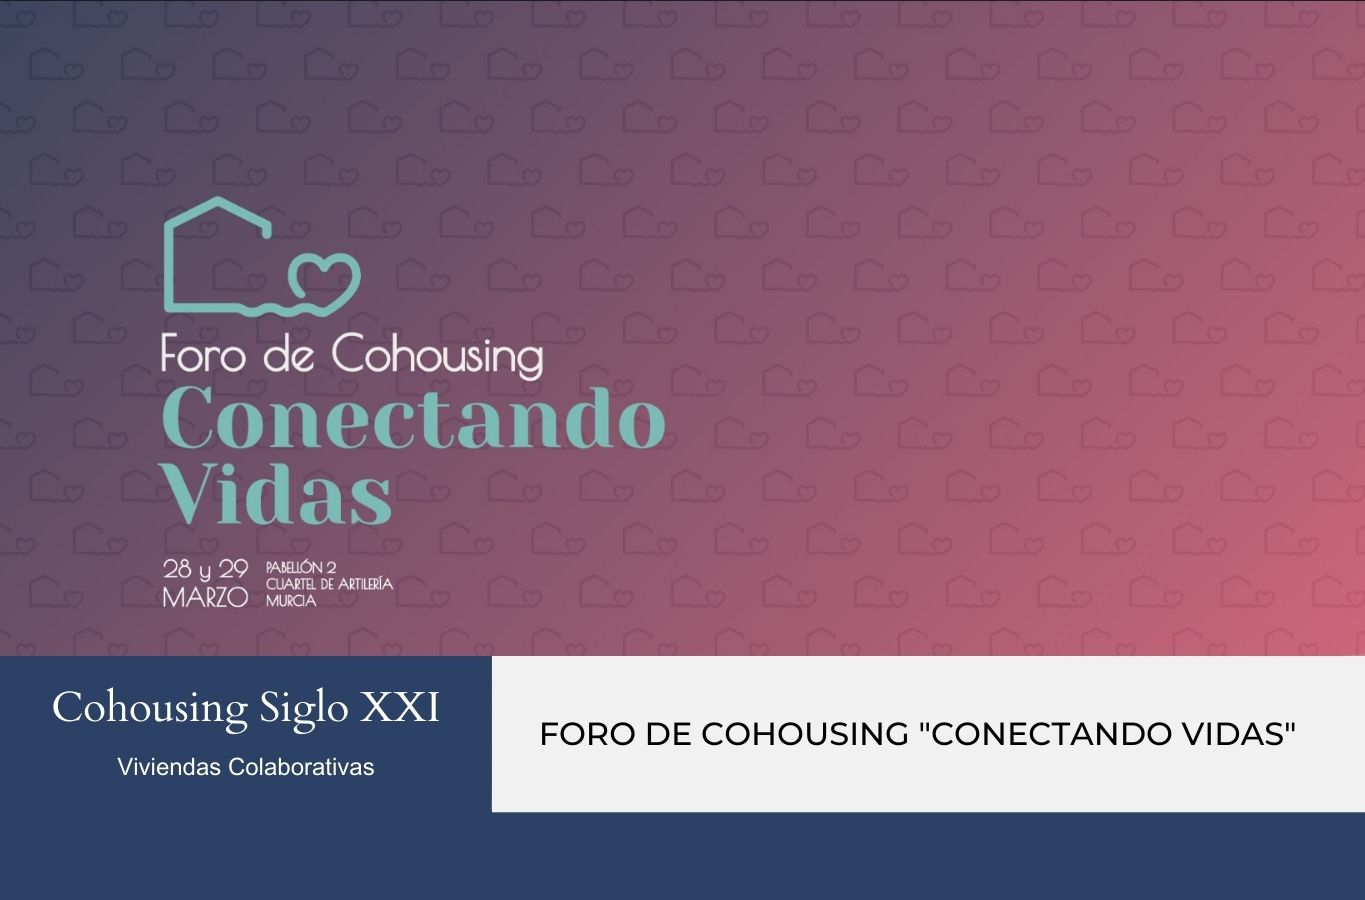 Cohousing Siglo XXI - Foro de Cohousing Murcia Conectando Vidas